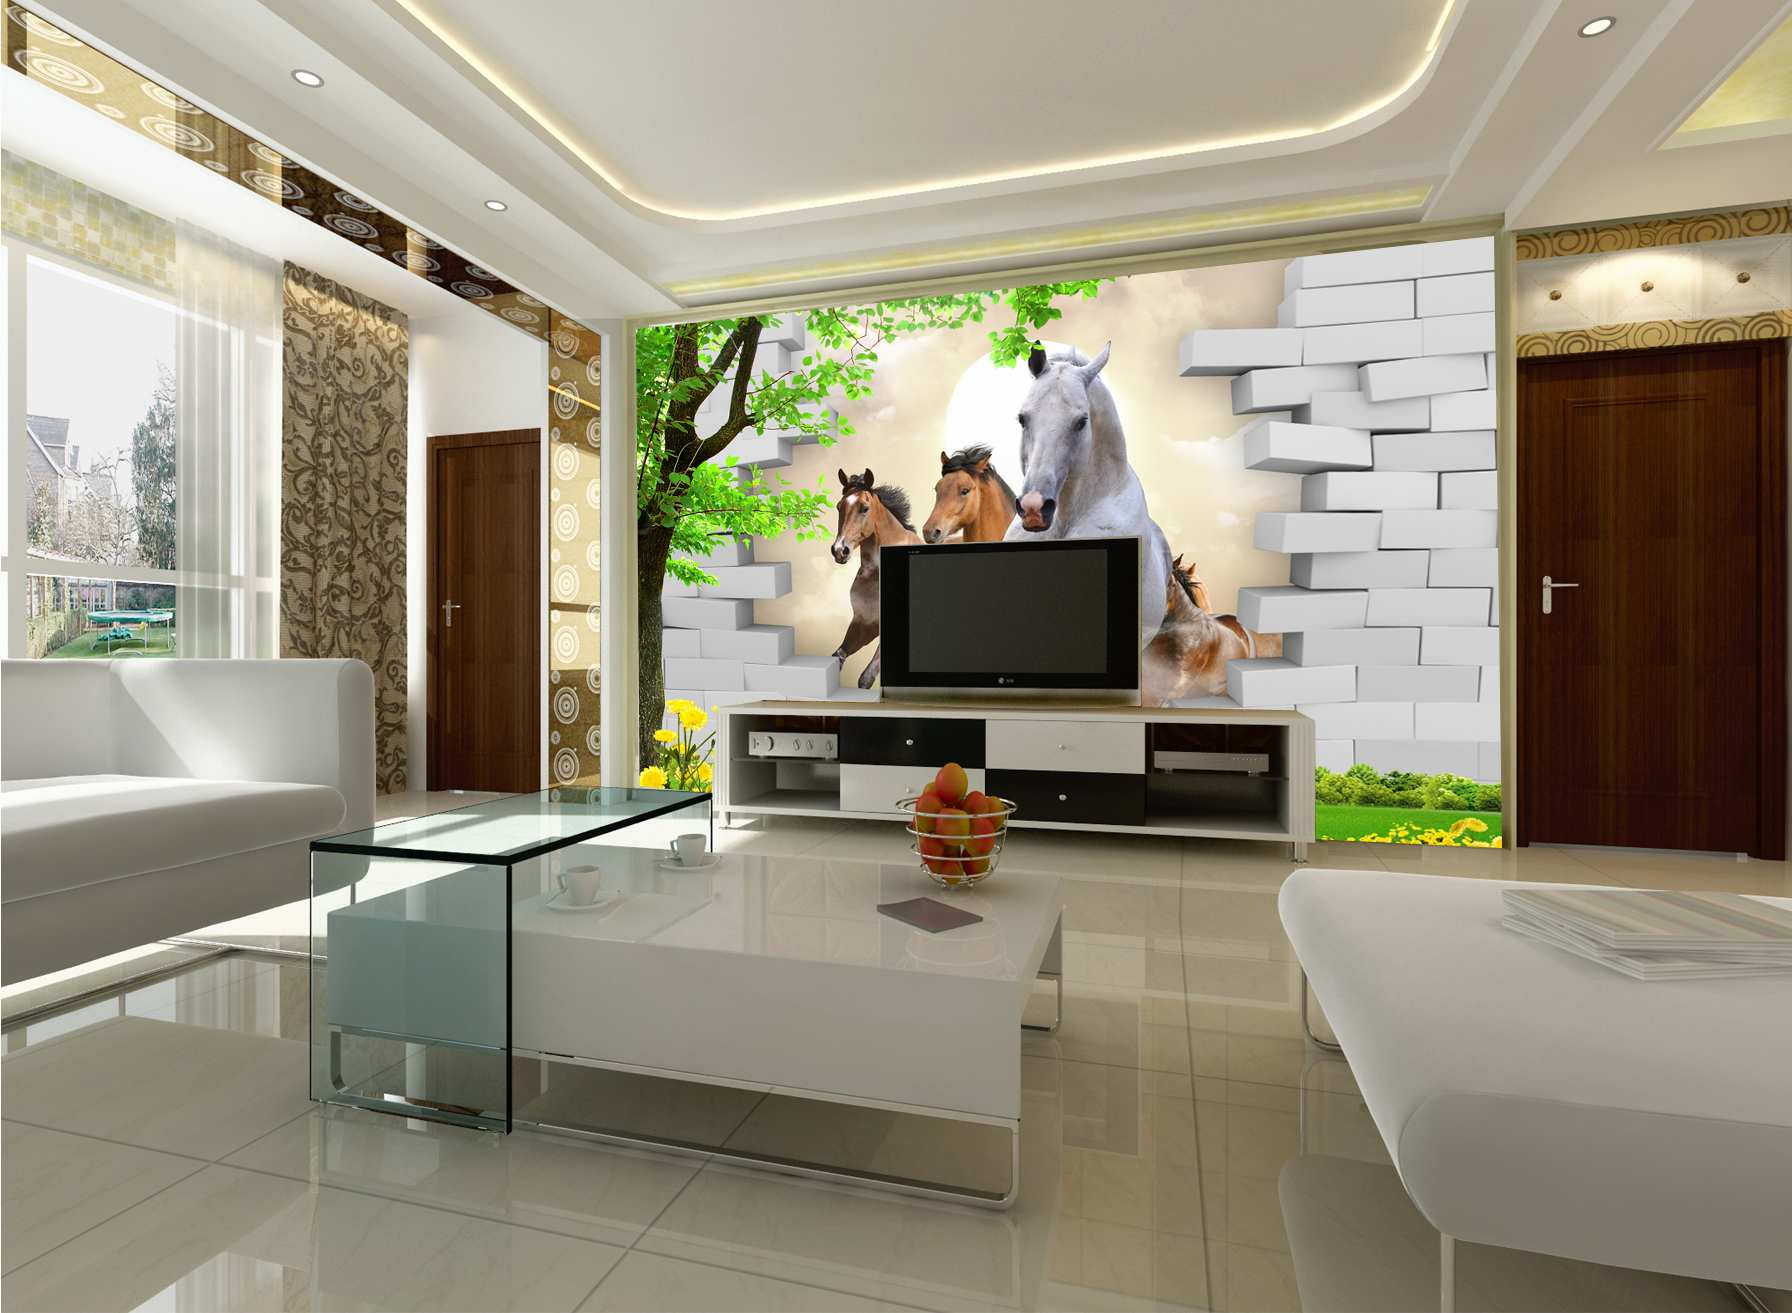 TV Unit & Living Room Concept